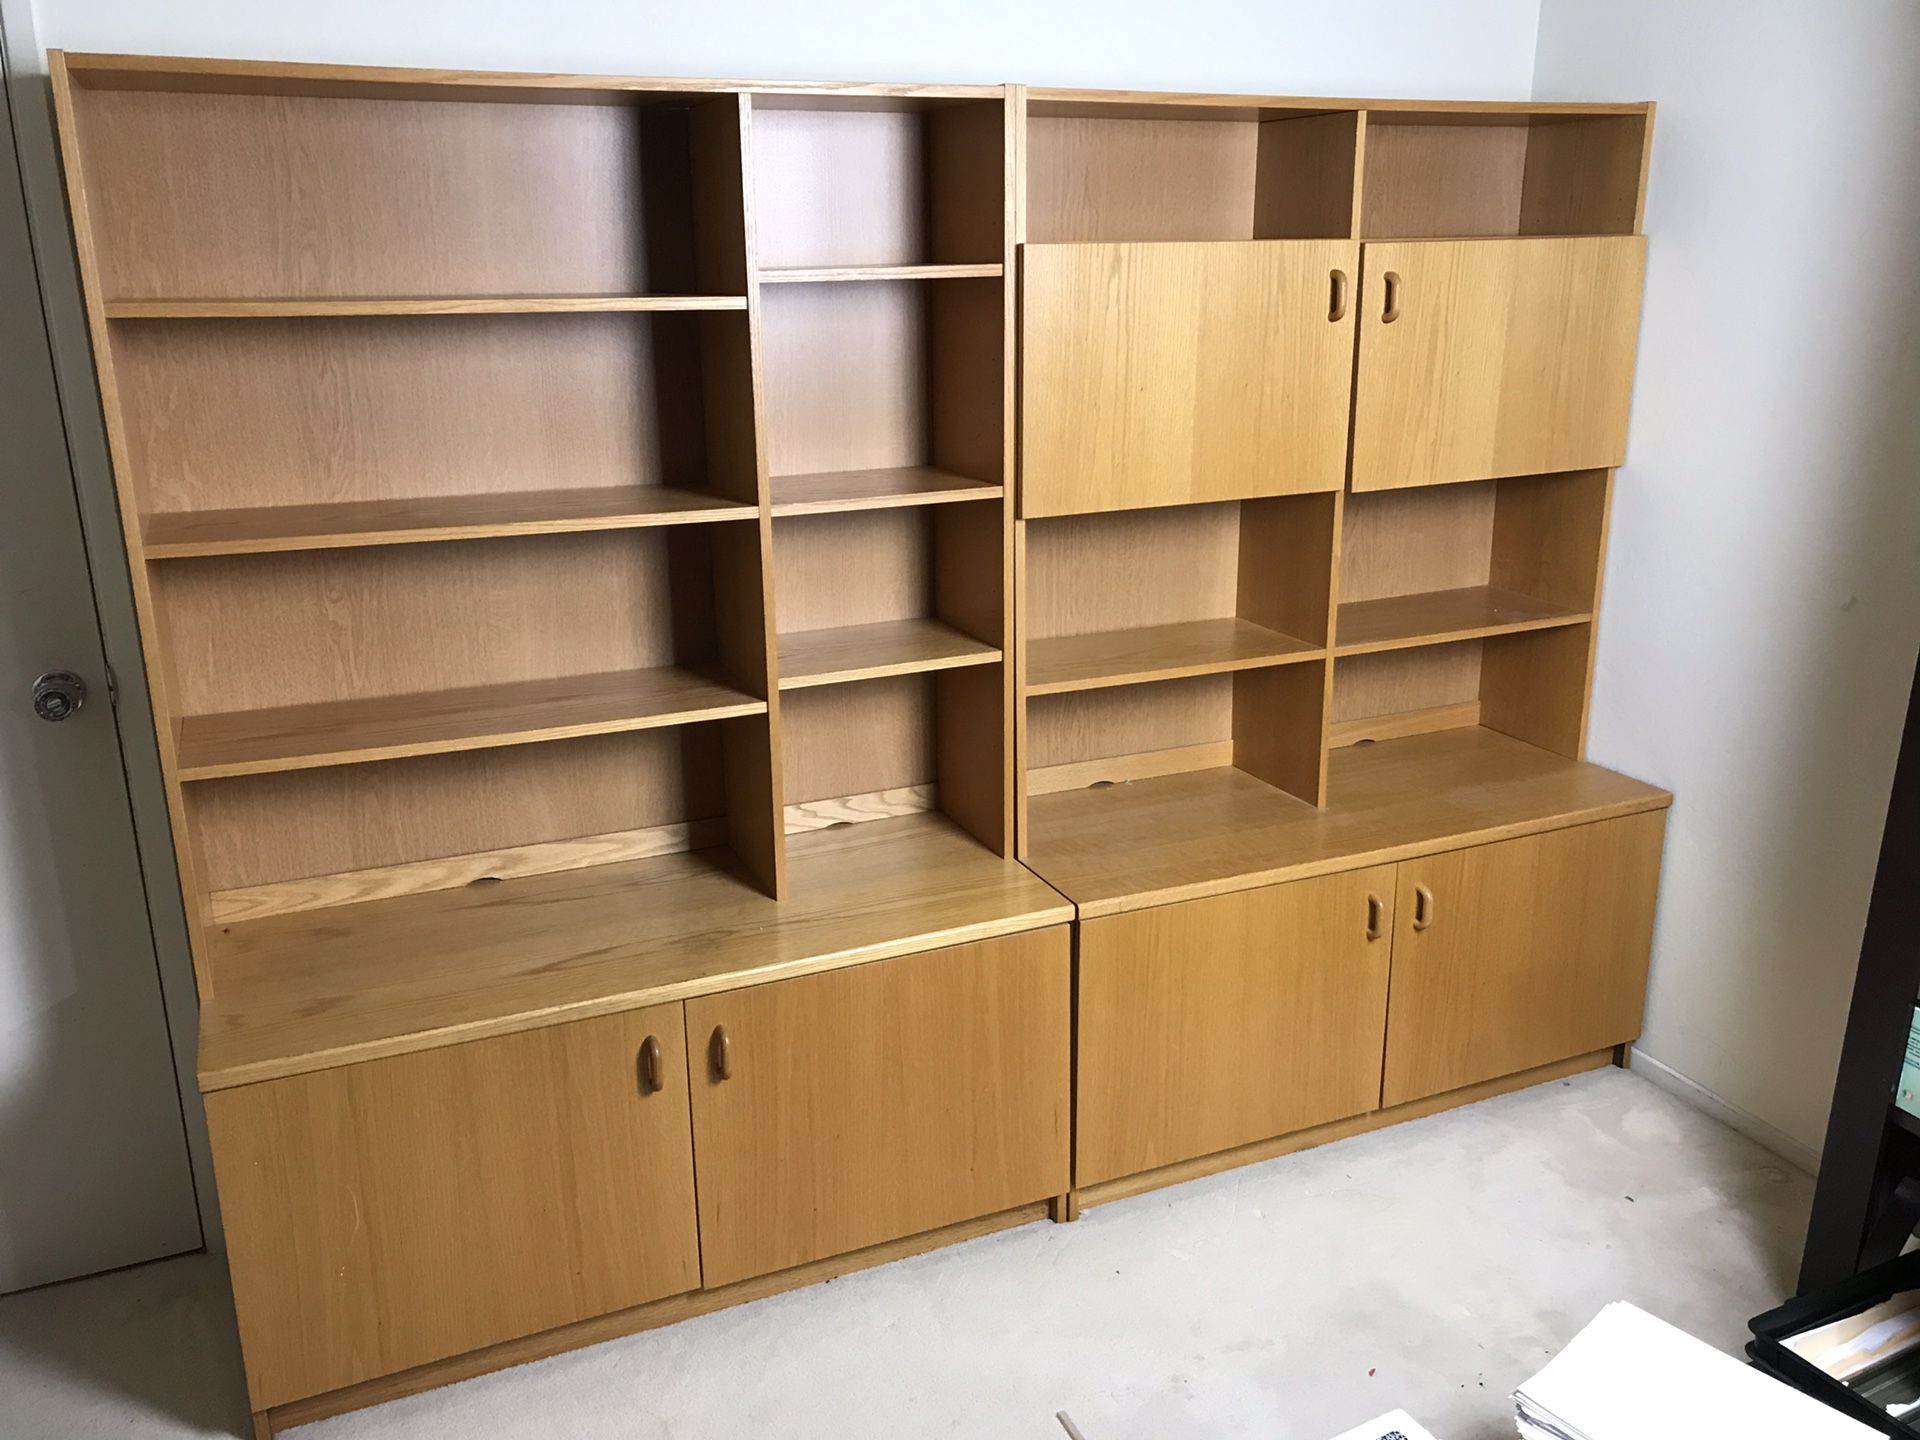 $175 firm. 2 piece wood set cabinet shelf storage 95”W x 68”H x 20”D